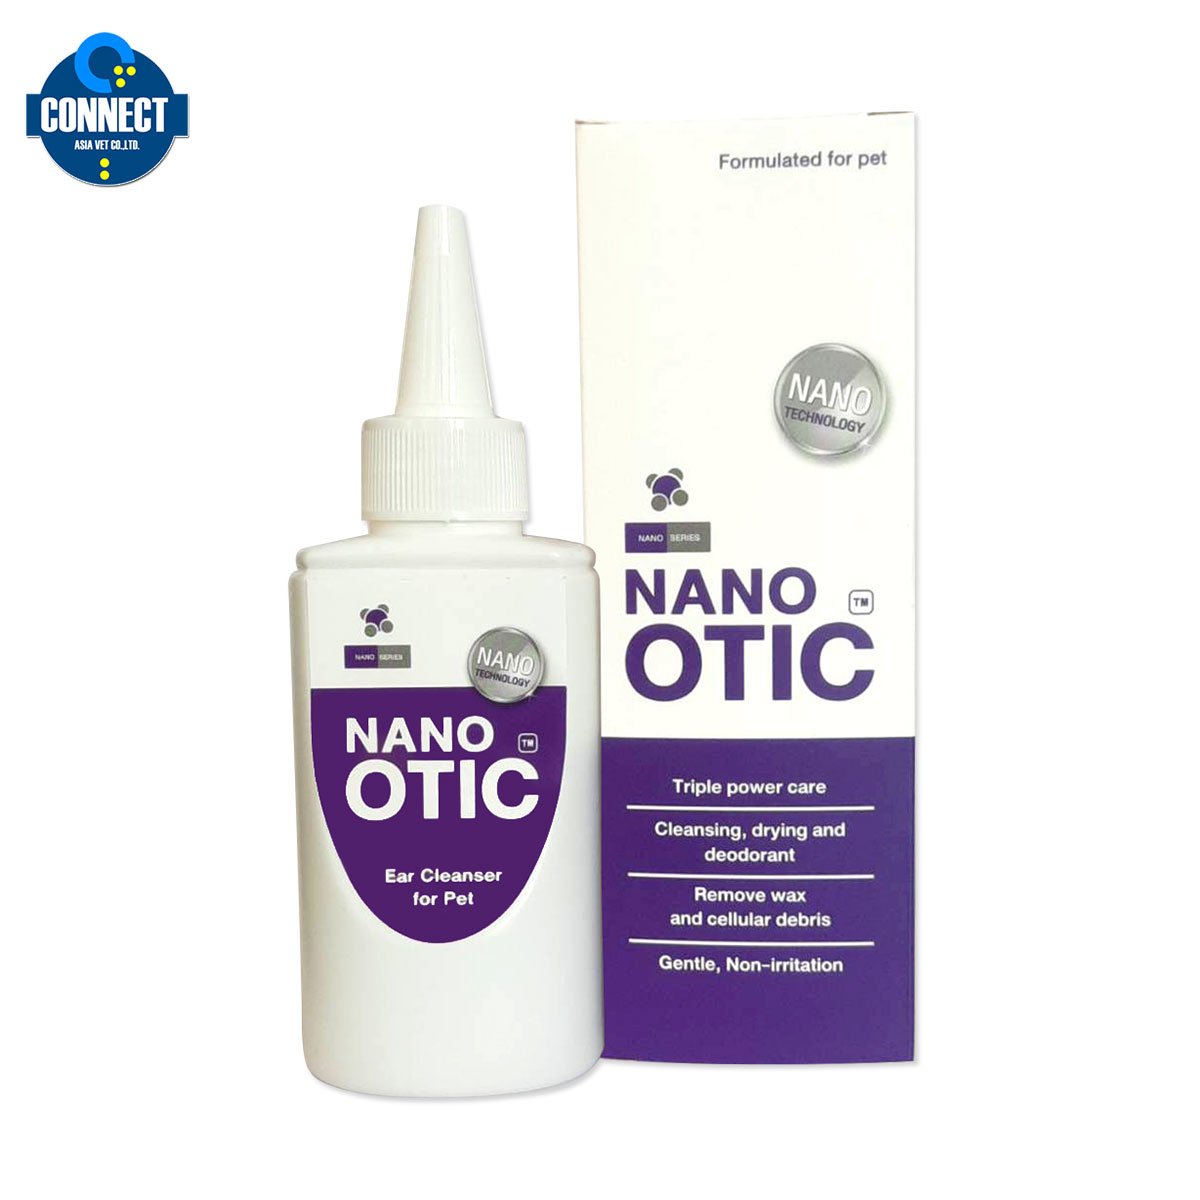 Nano Otic ผลิตภัณฑ์ทำความสะอาดหู สำหรับสุนัขและแมว อ่อนโยน ไม่อับชื้น 120 ml.